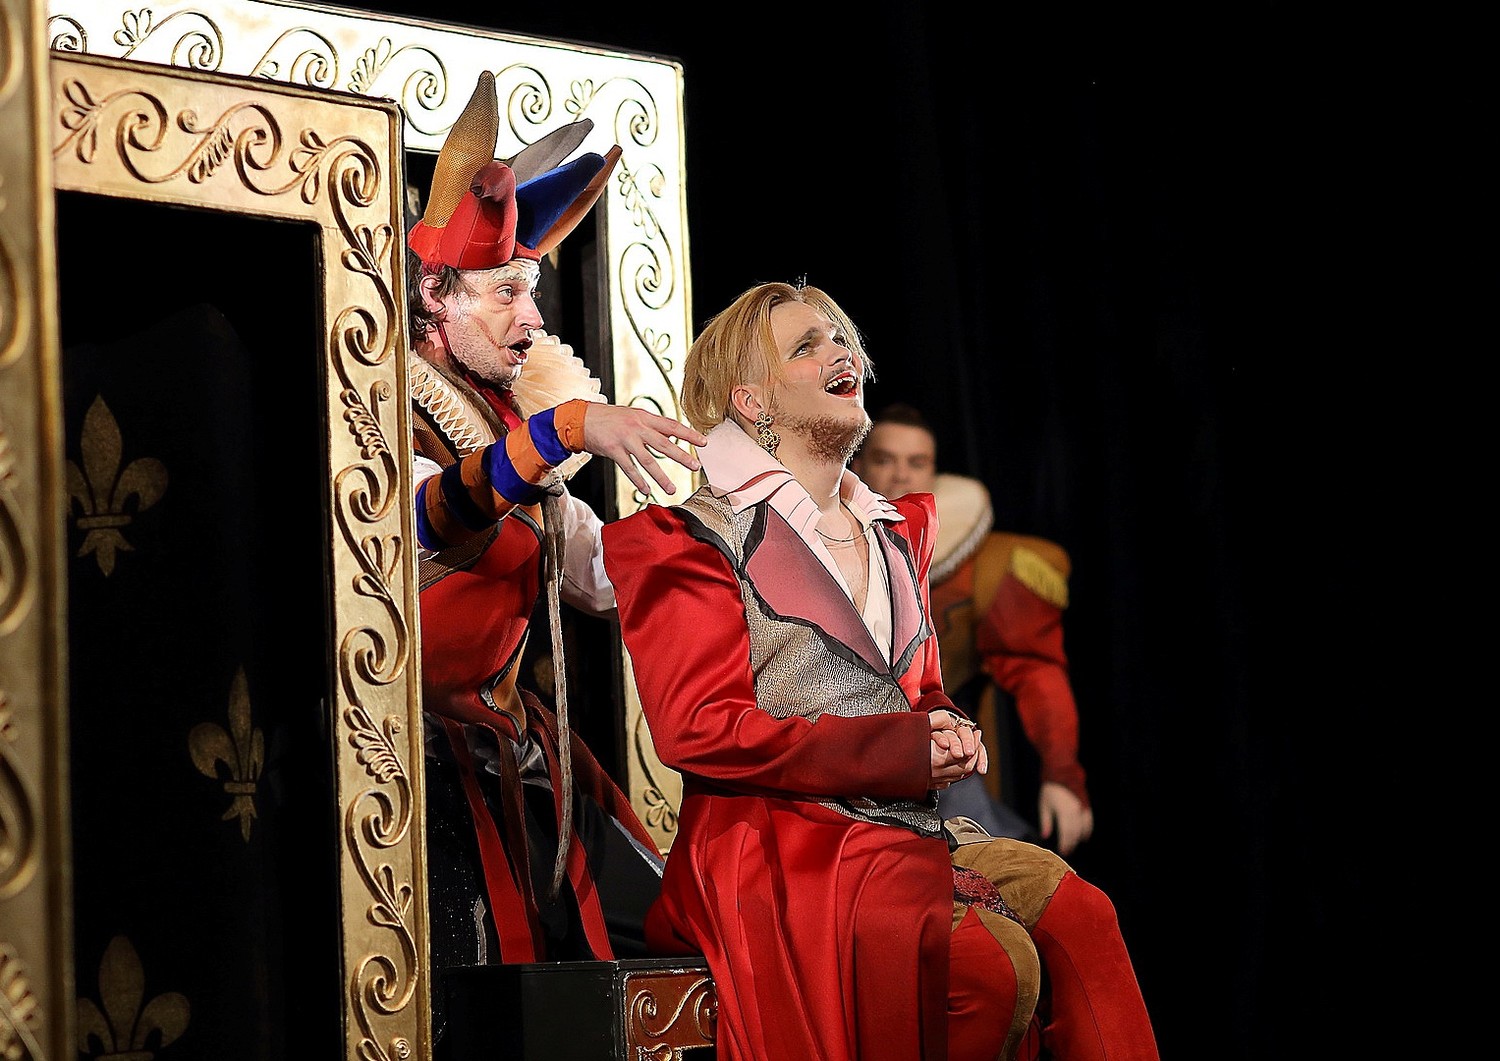 24 сентября спектакль «Король забавляется (Rigoletto)» будет показан в Самаре на III межрегиональном фестивале «Волга Театральная»